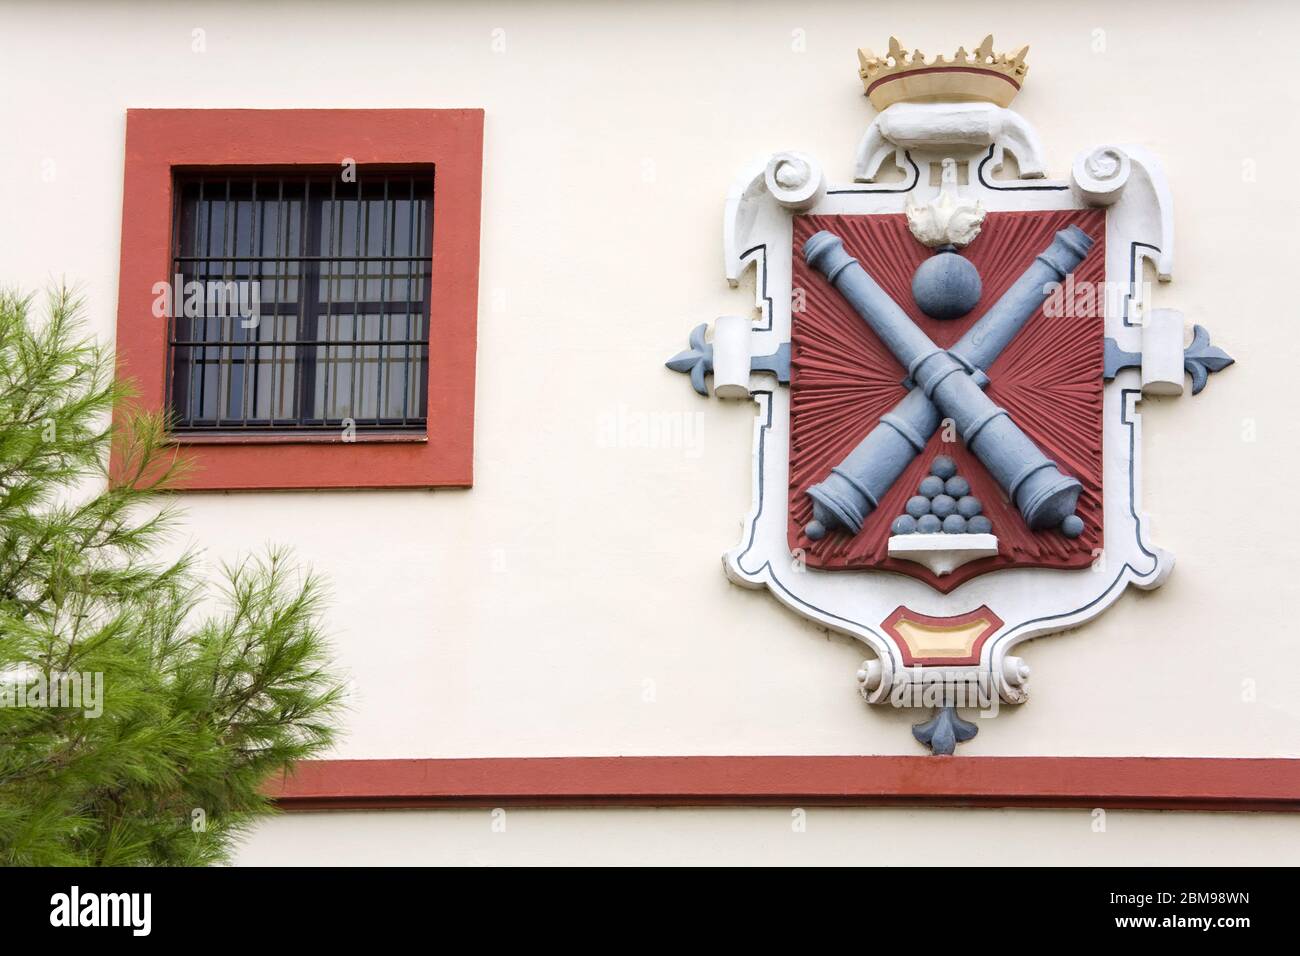 Wappen auf der ehemaligen Kaserne, Cadiz, Andalusien, Spanien, Europa Stockfoto